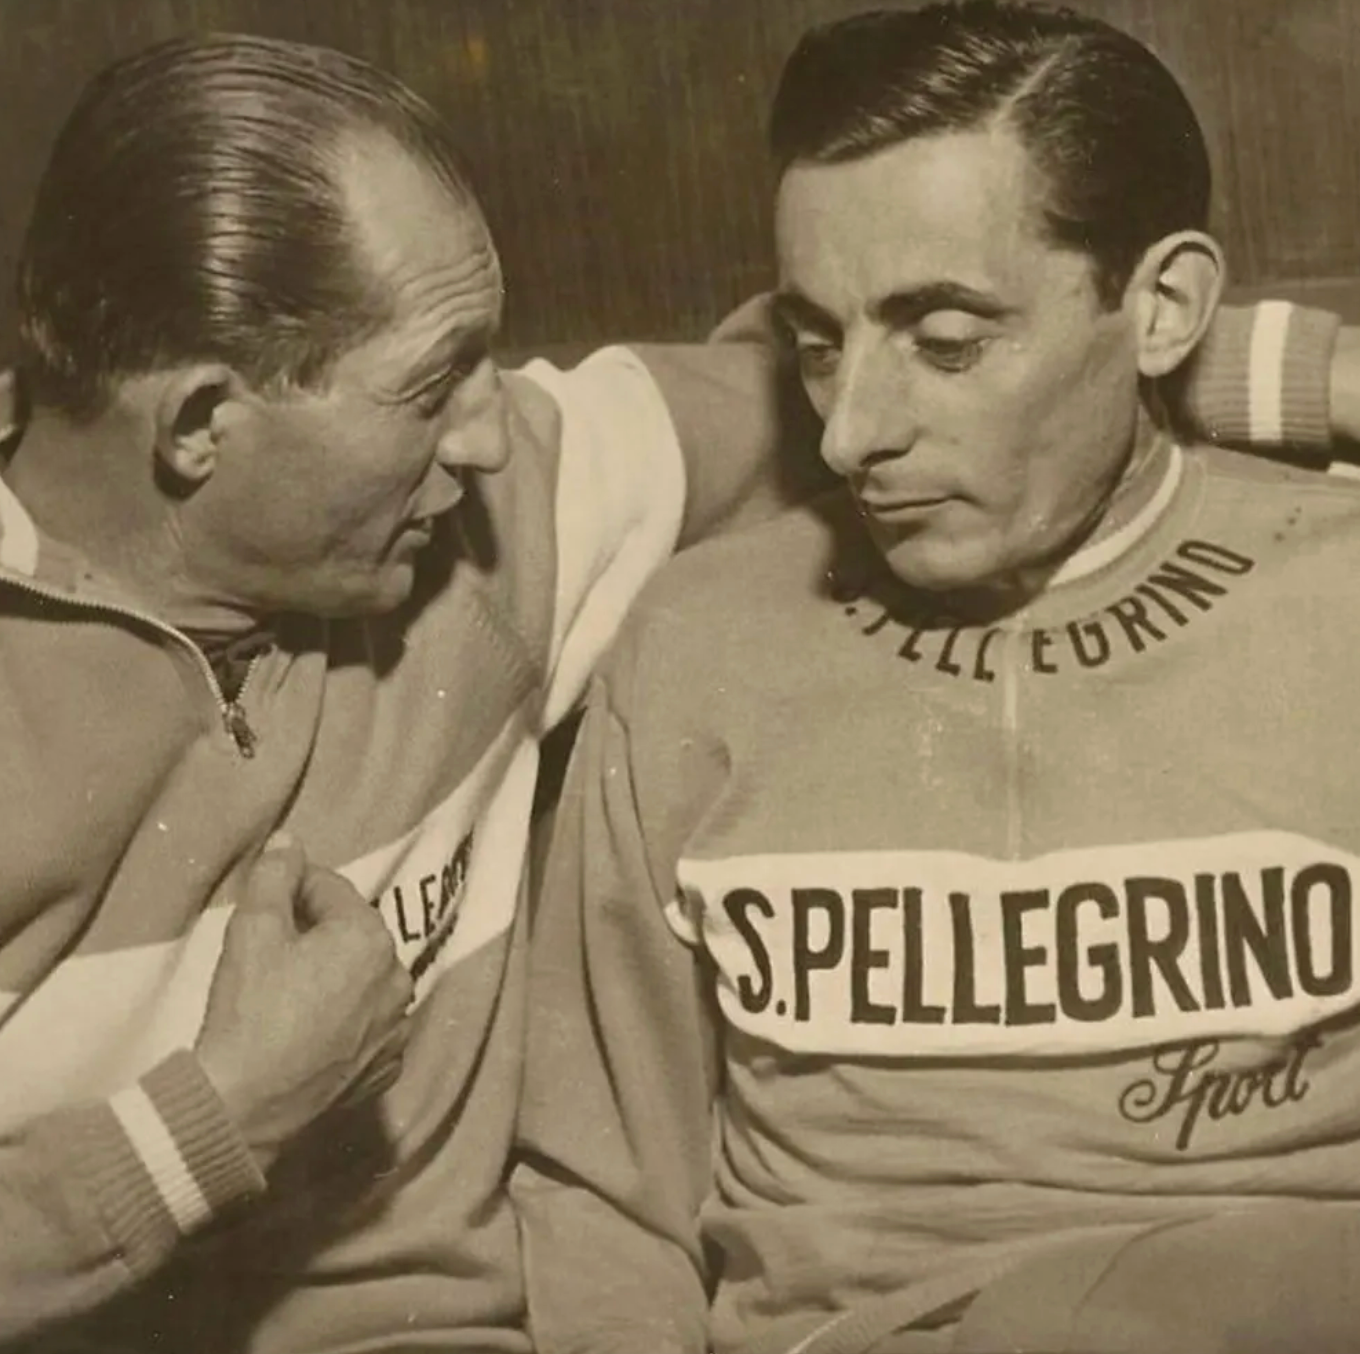 Maillot en Laine Classique Retro Cyclisme S.Pellegrino - Vintage Cycling